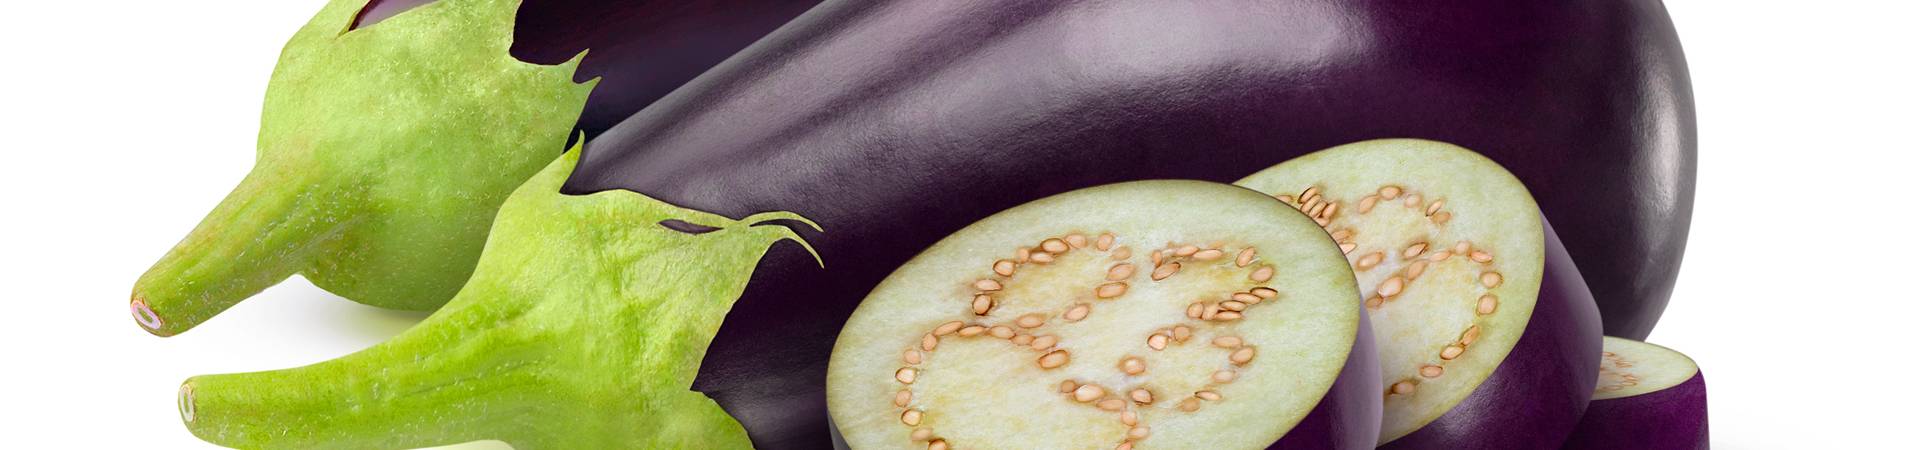 Можно ли баклажаны при беременности и кормлении грудью. можно или нельзя есть баклажаны кормящей маме, сколько в каком виде - автор екатерина данилова - журнал женское мнение